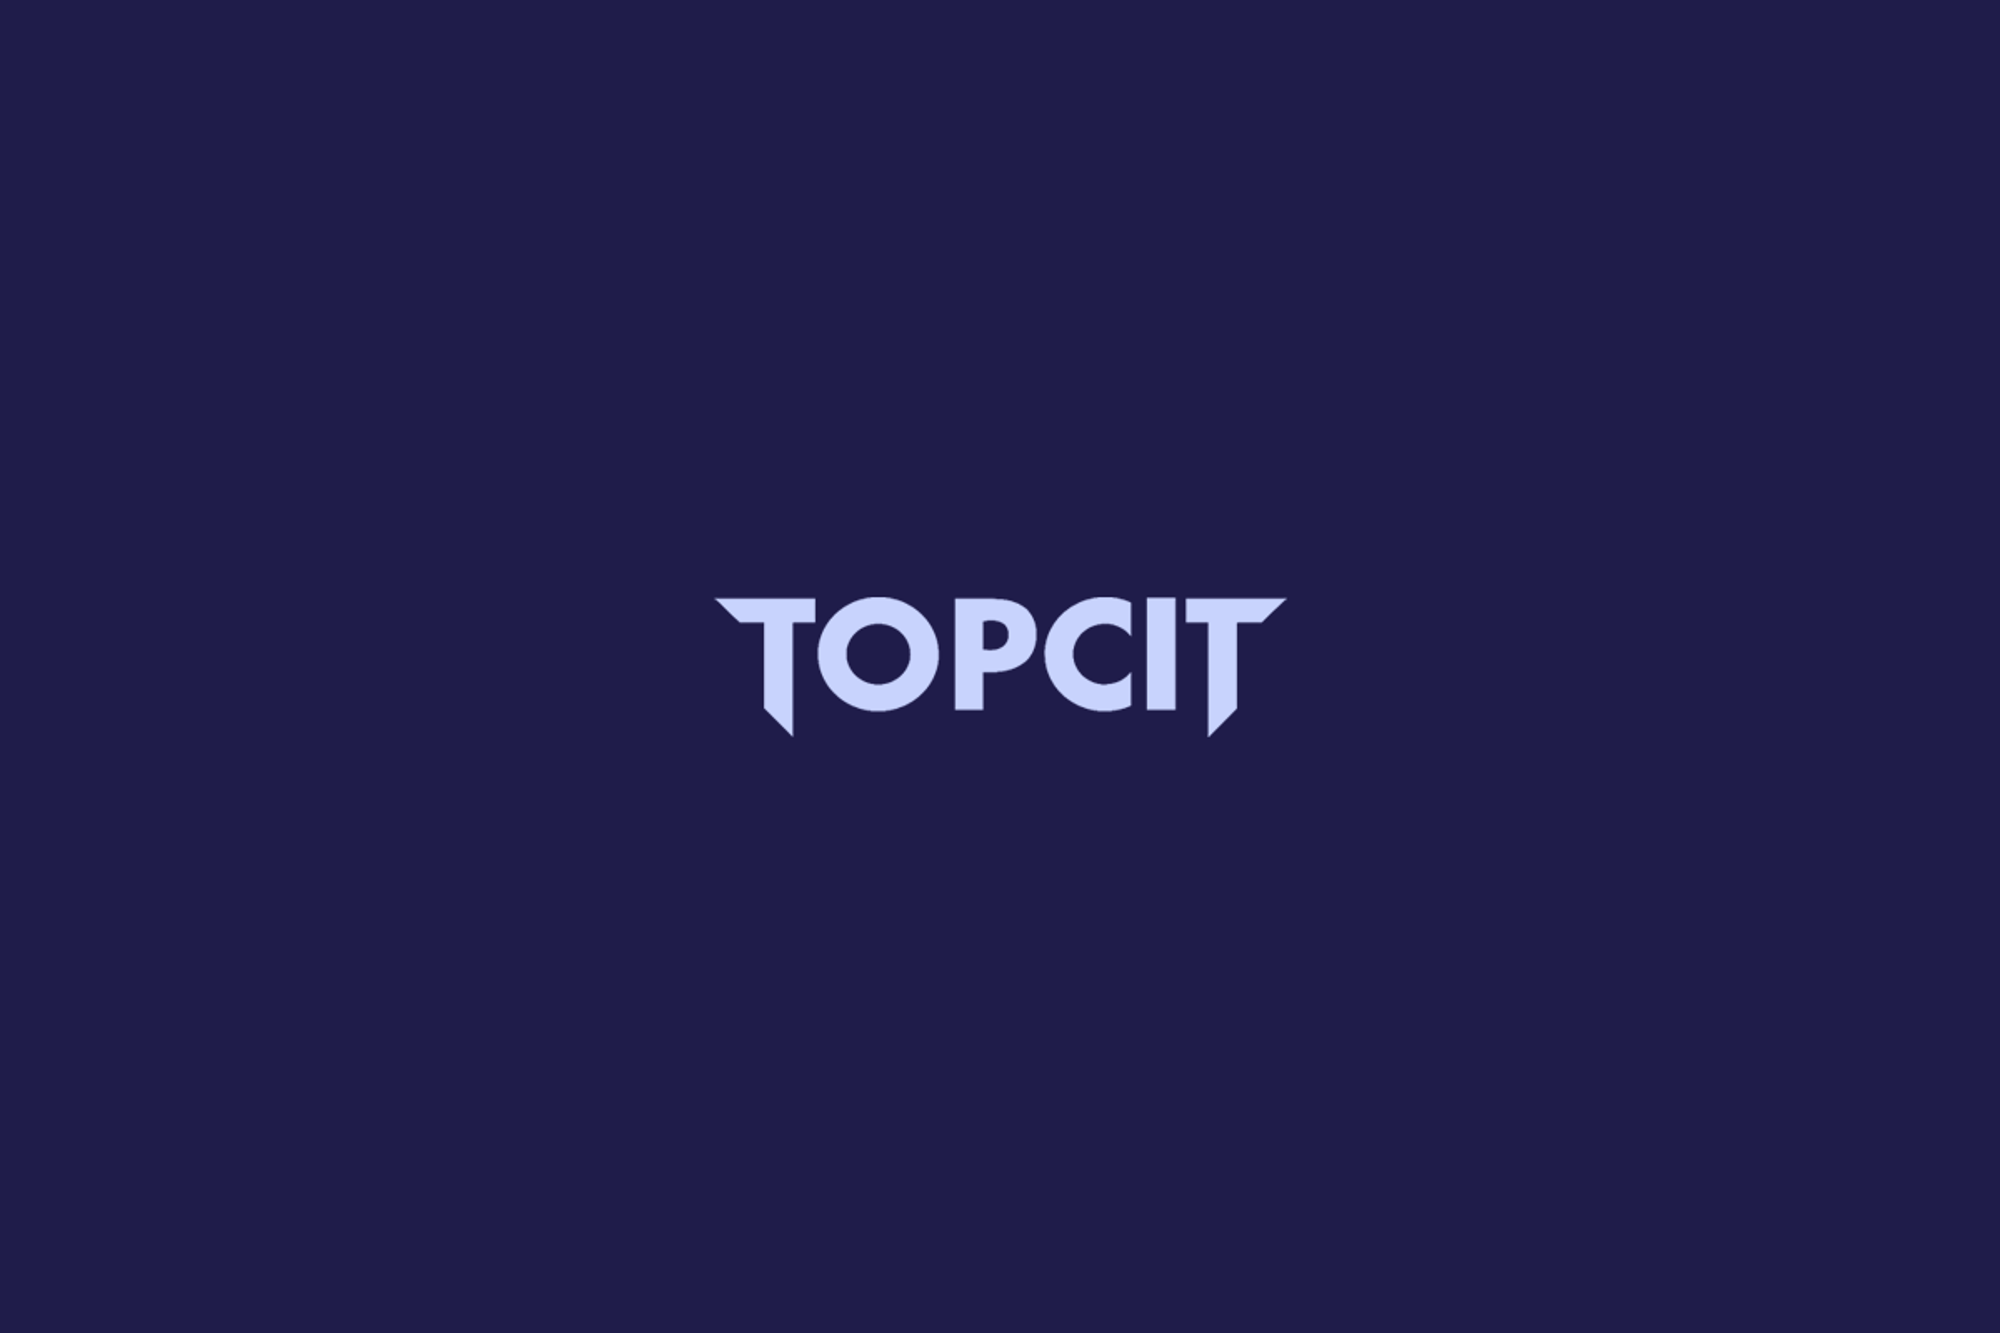 TOPCIT 요약정리 - 3. 시스템 아키텍처